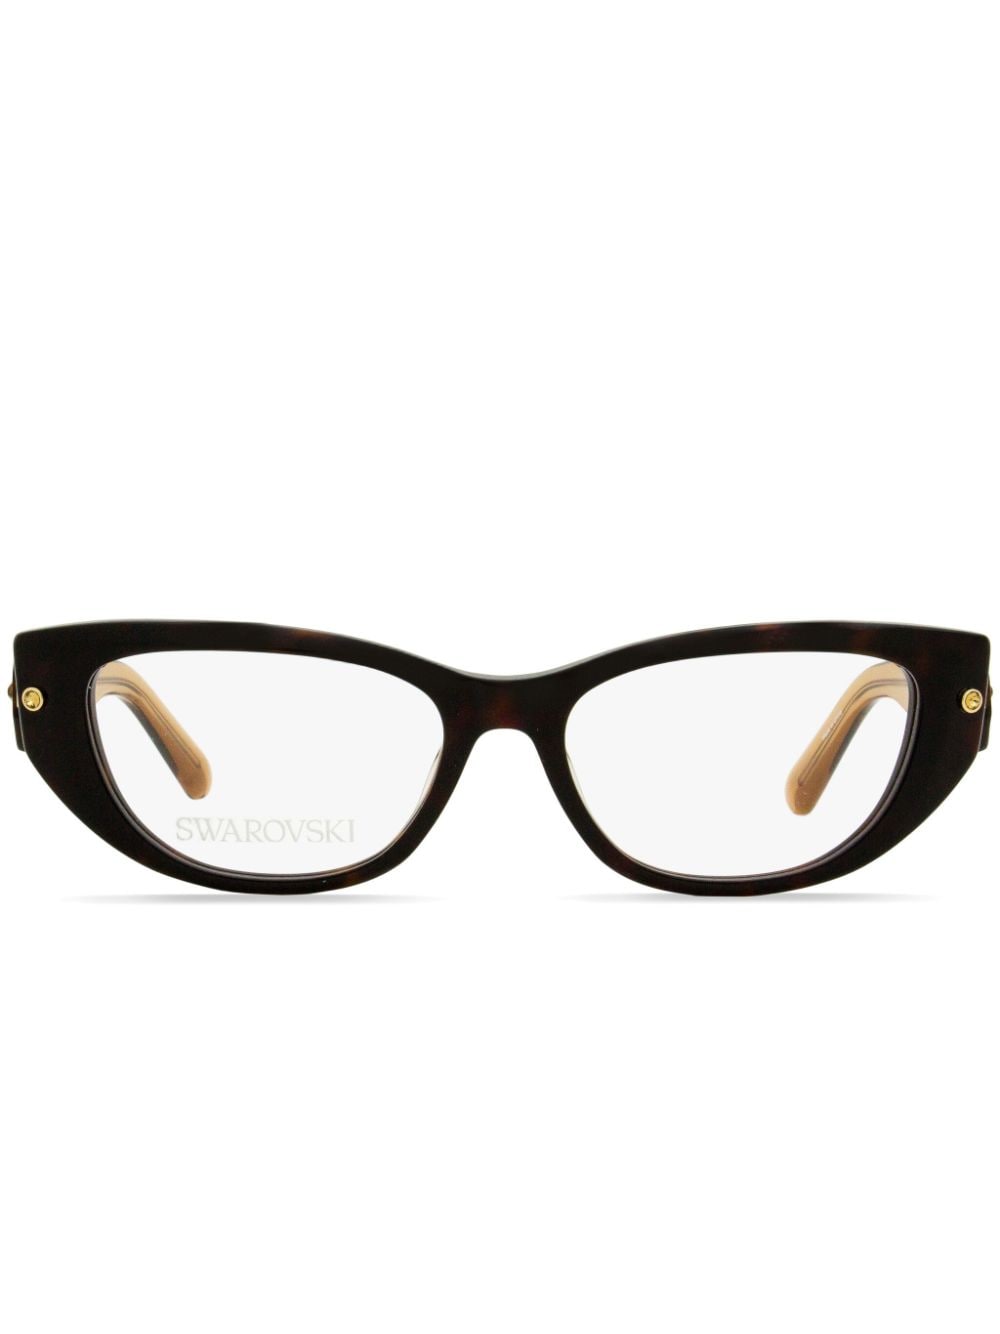 Swarovski 5476 rectangle-frame crystal glasses - Brown von Swarovski